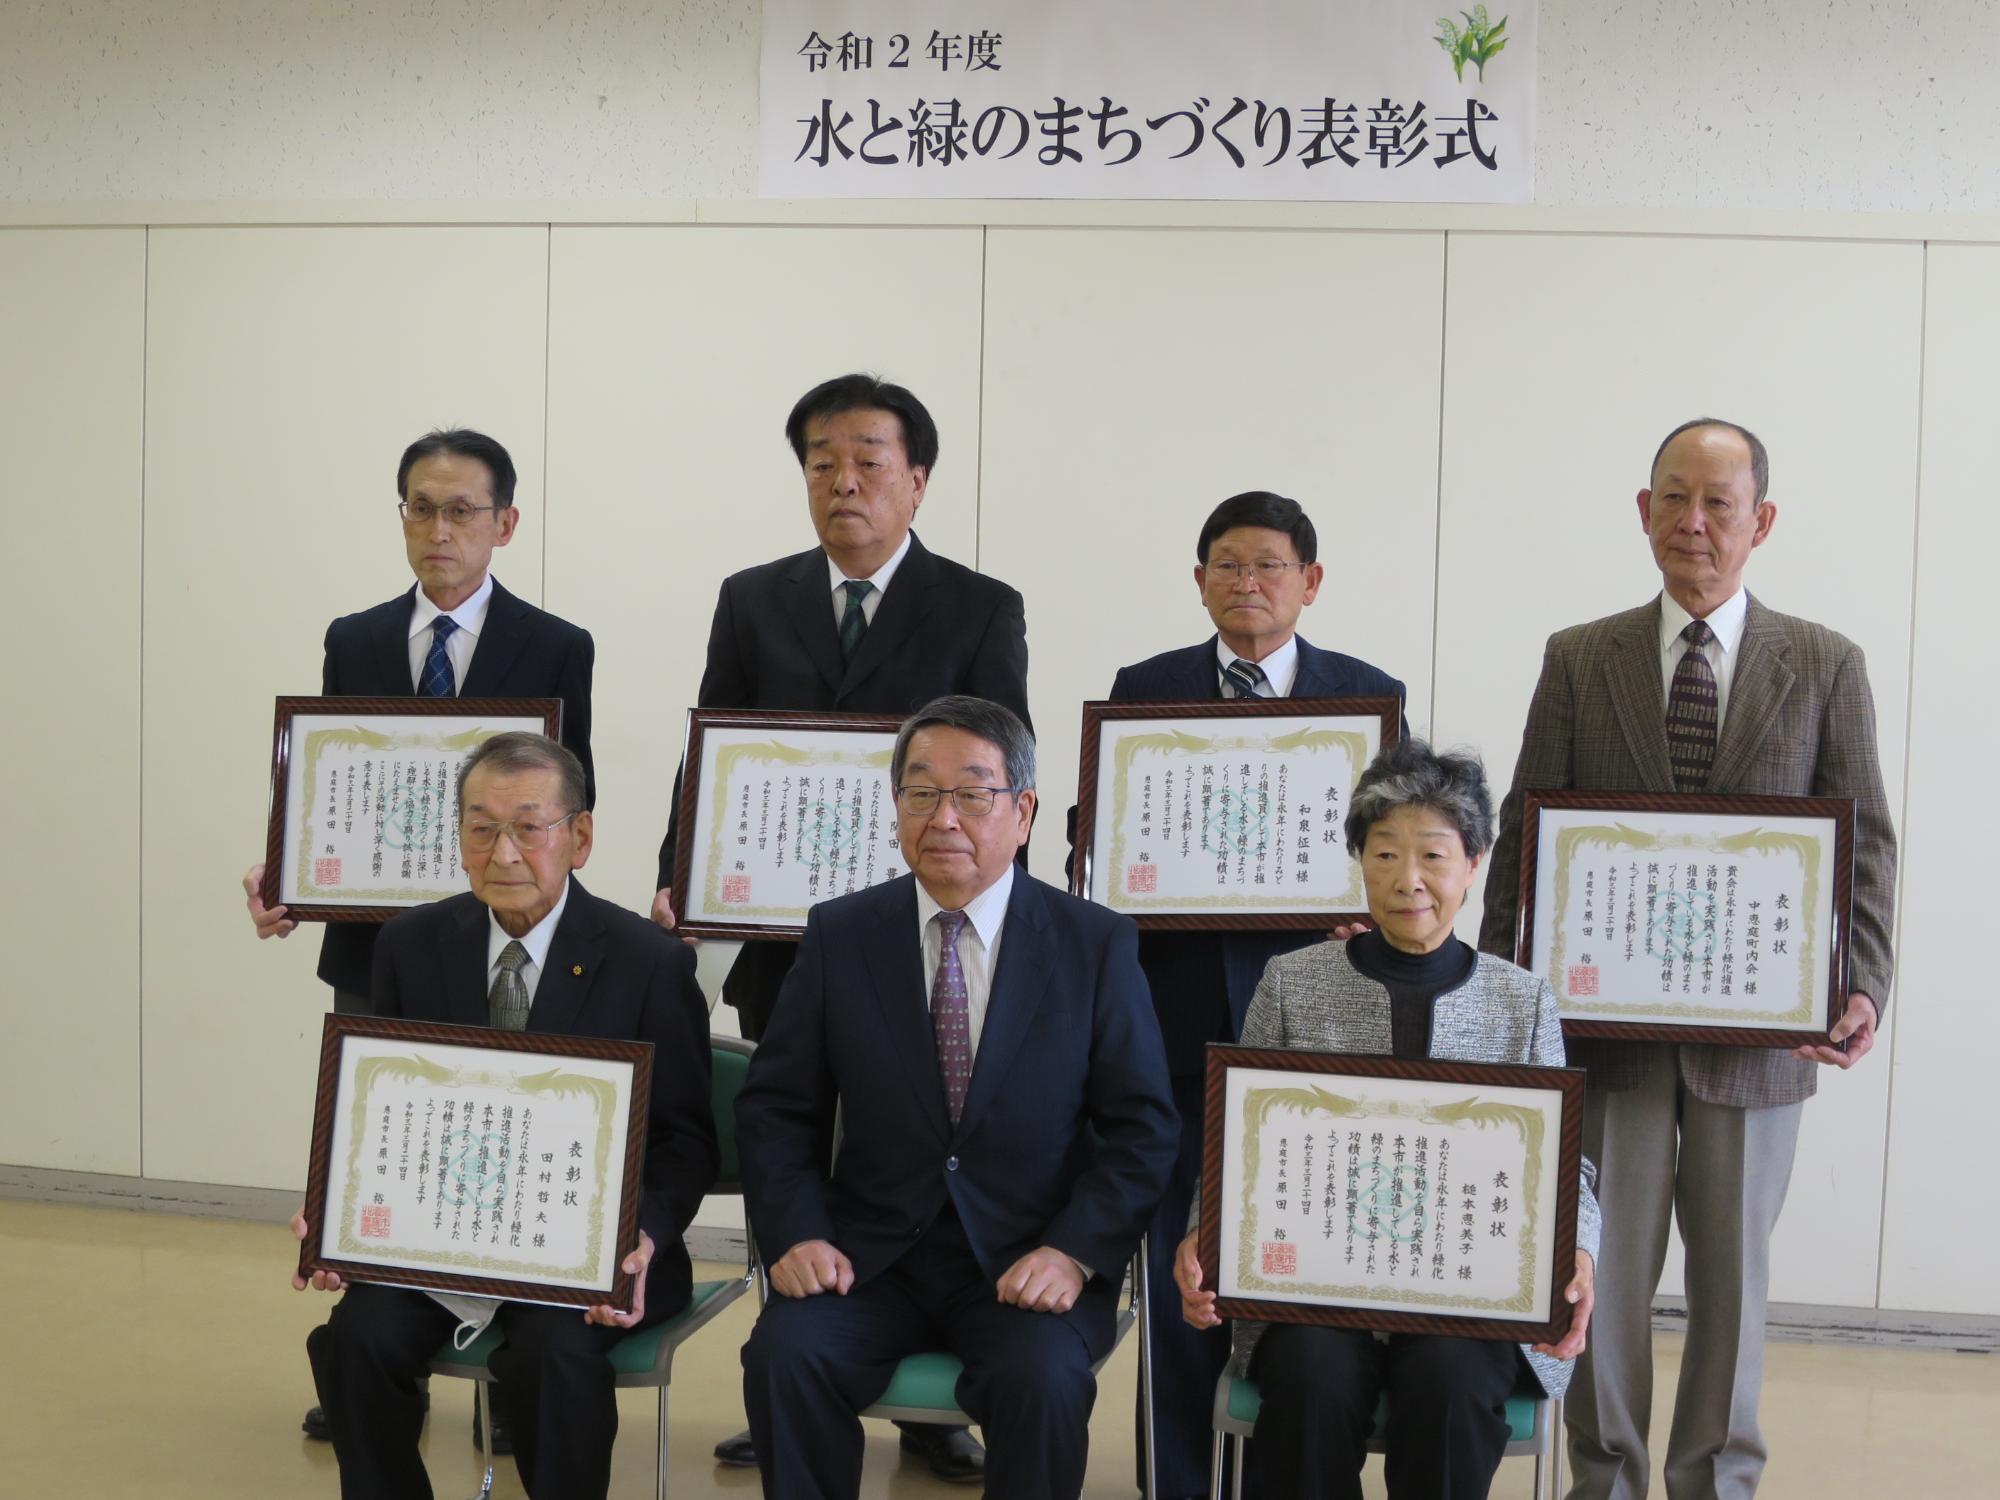 水と緑のまちづくり表彰受賞者と原田市長の集合写真